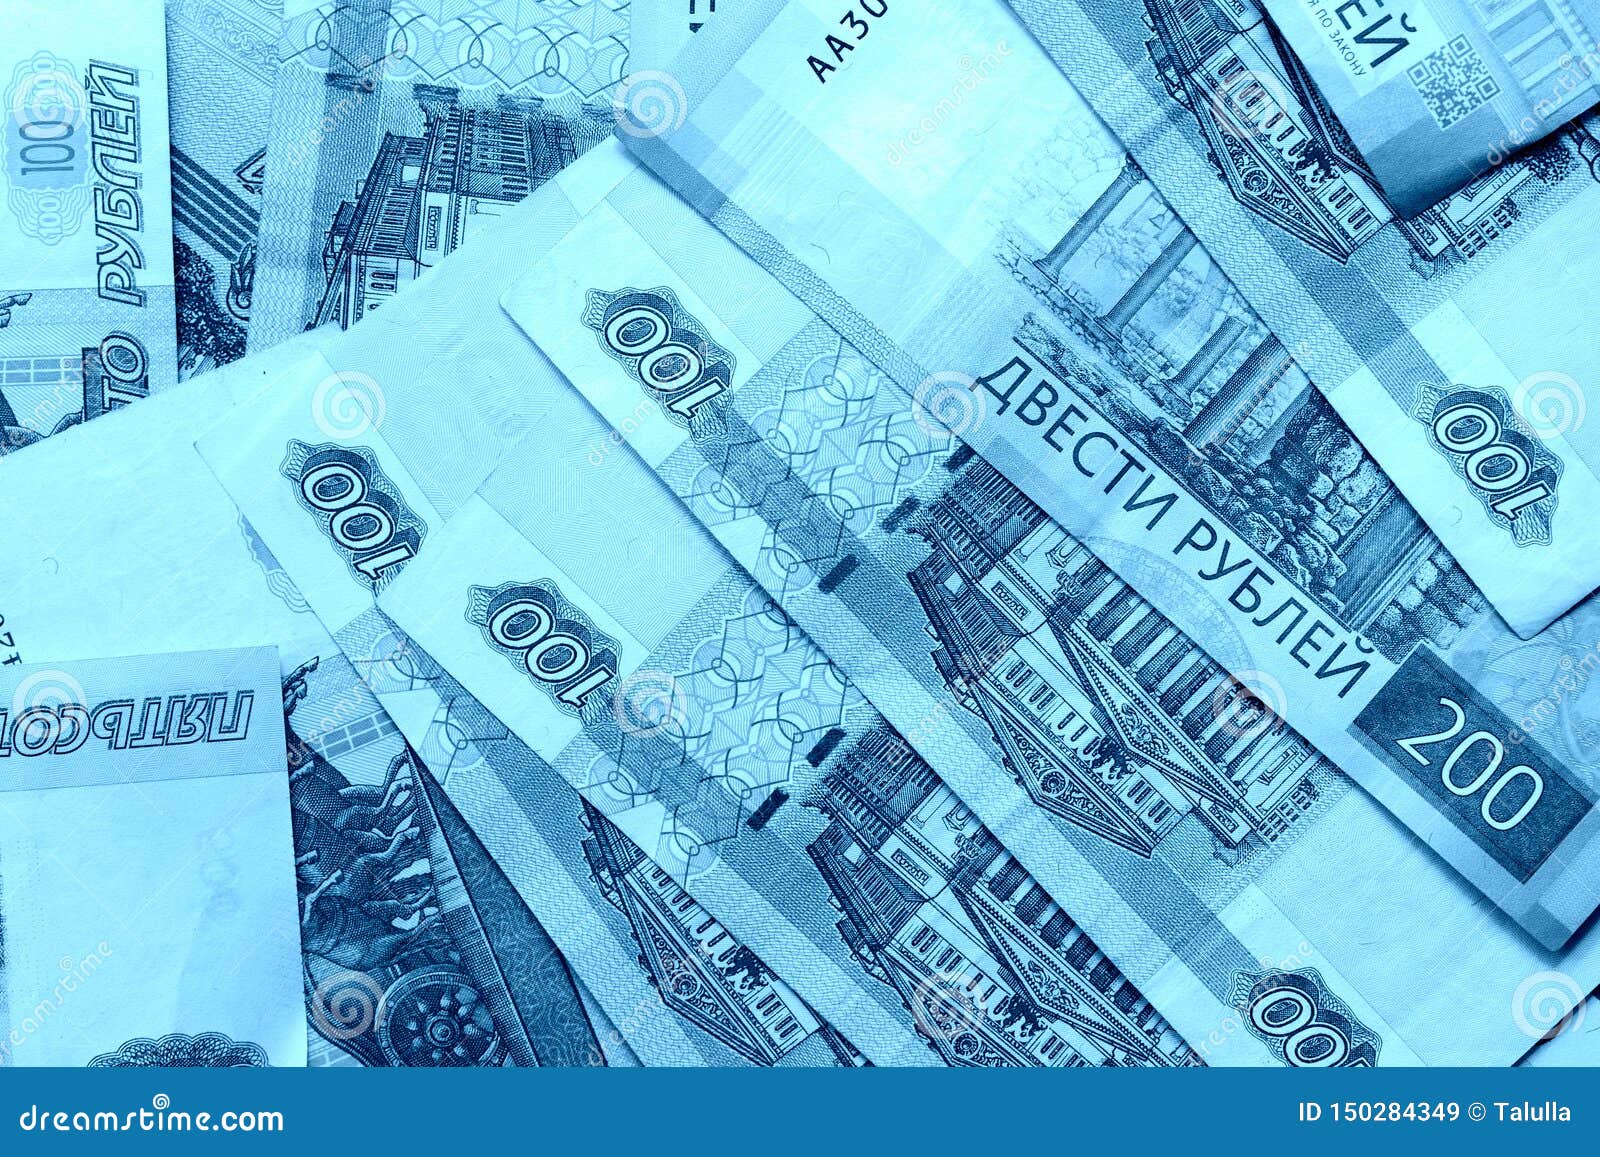 Синие купюры. Деньги на синем фоне. Деньги в синих тонах. Голубой фон с деньгами.